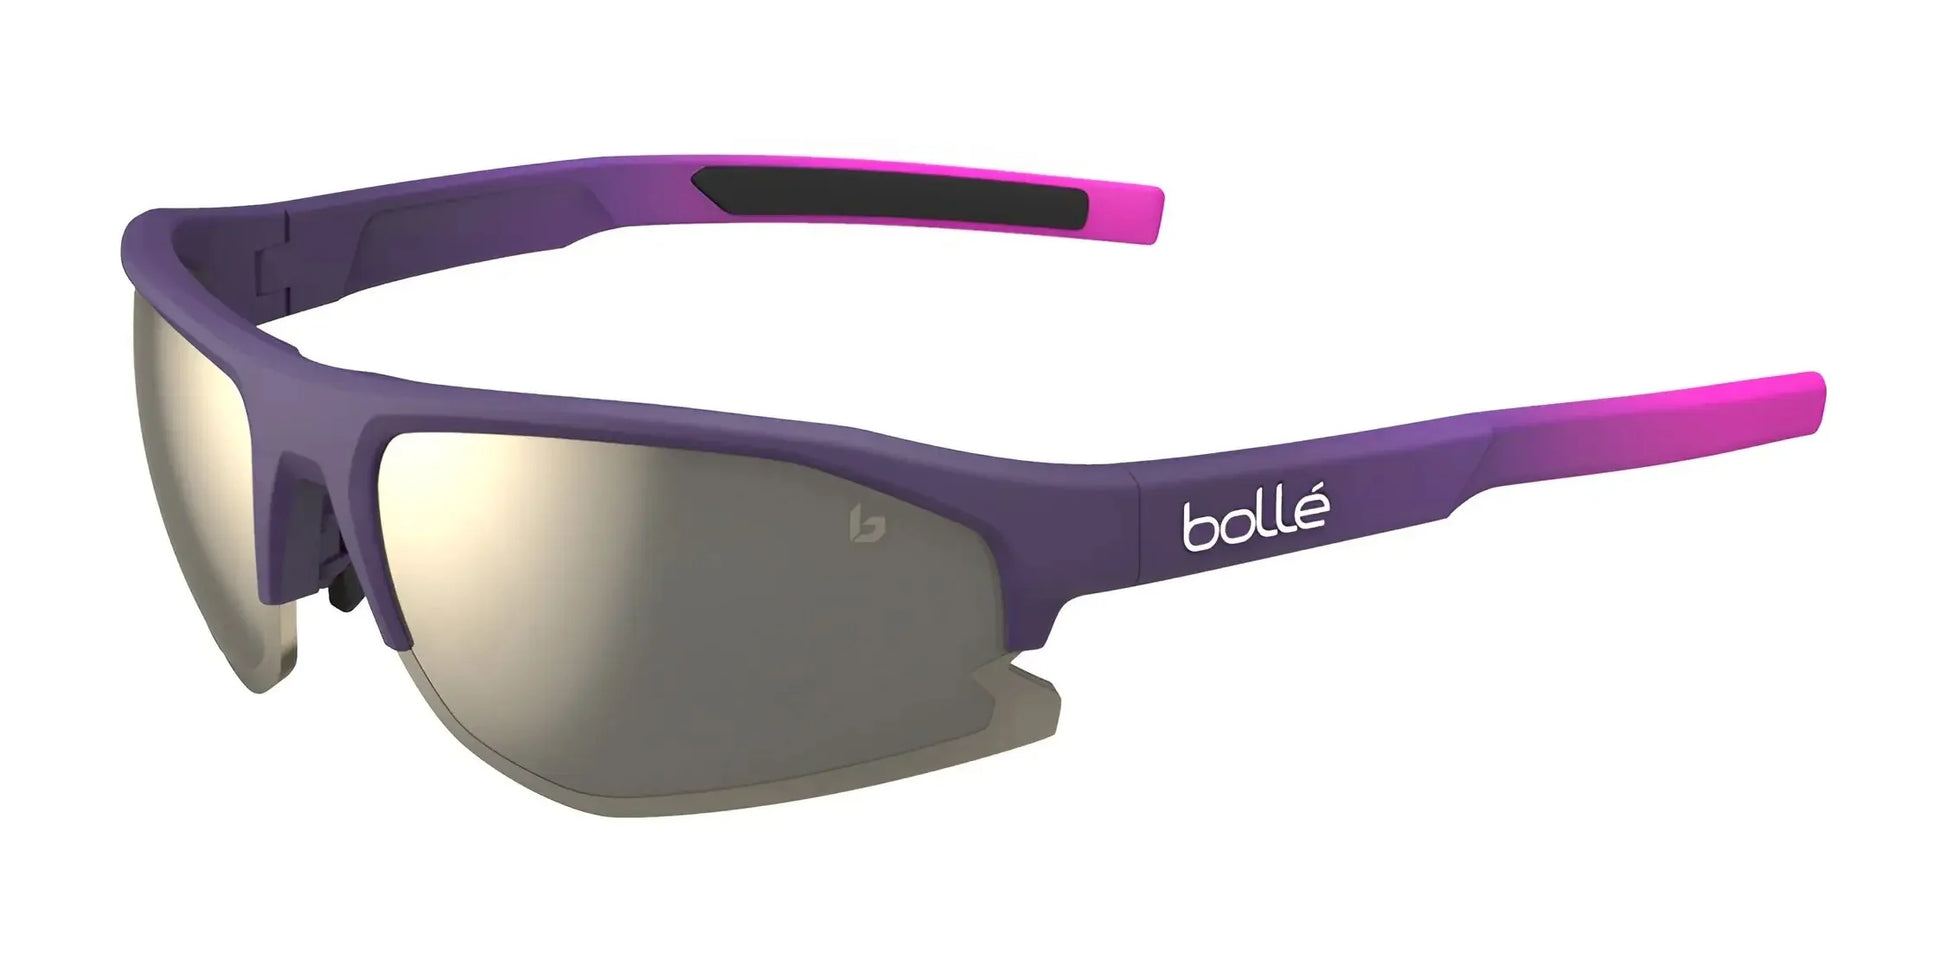 Bolle Bolt 2.0 Sunglasses Burgundy Pink Matte / TNS Gold